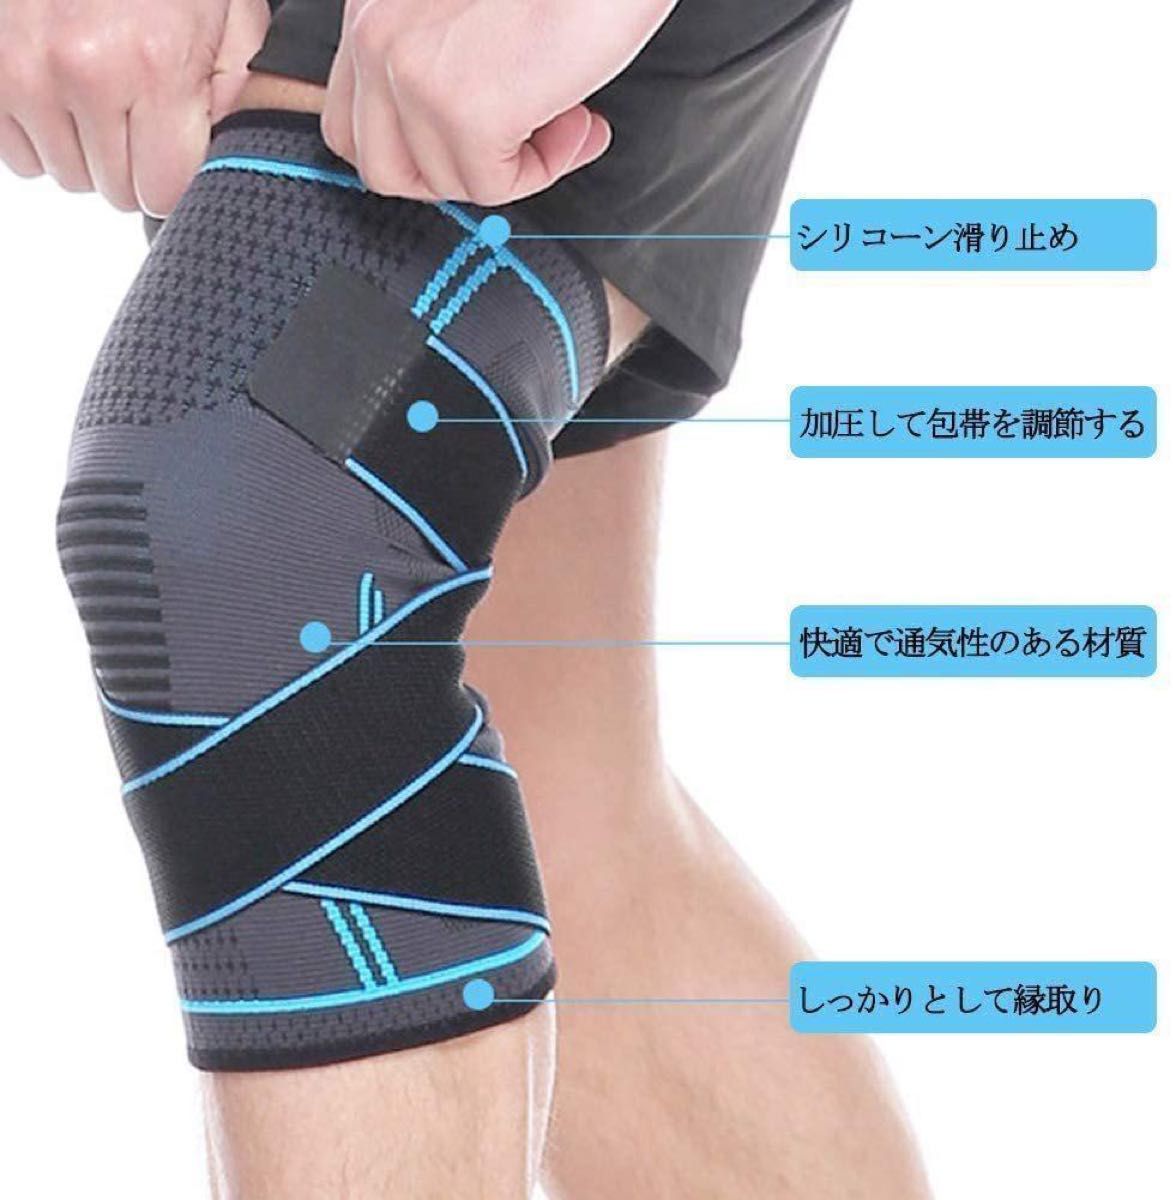 【2枚入り・XL】膝サポーター スポーツサポーター 膝 ベルト式 固定 関節 靭帯 両ヒザ用 保温 左右兼用 通気性 伸縮性 男女